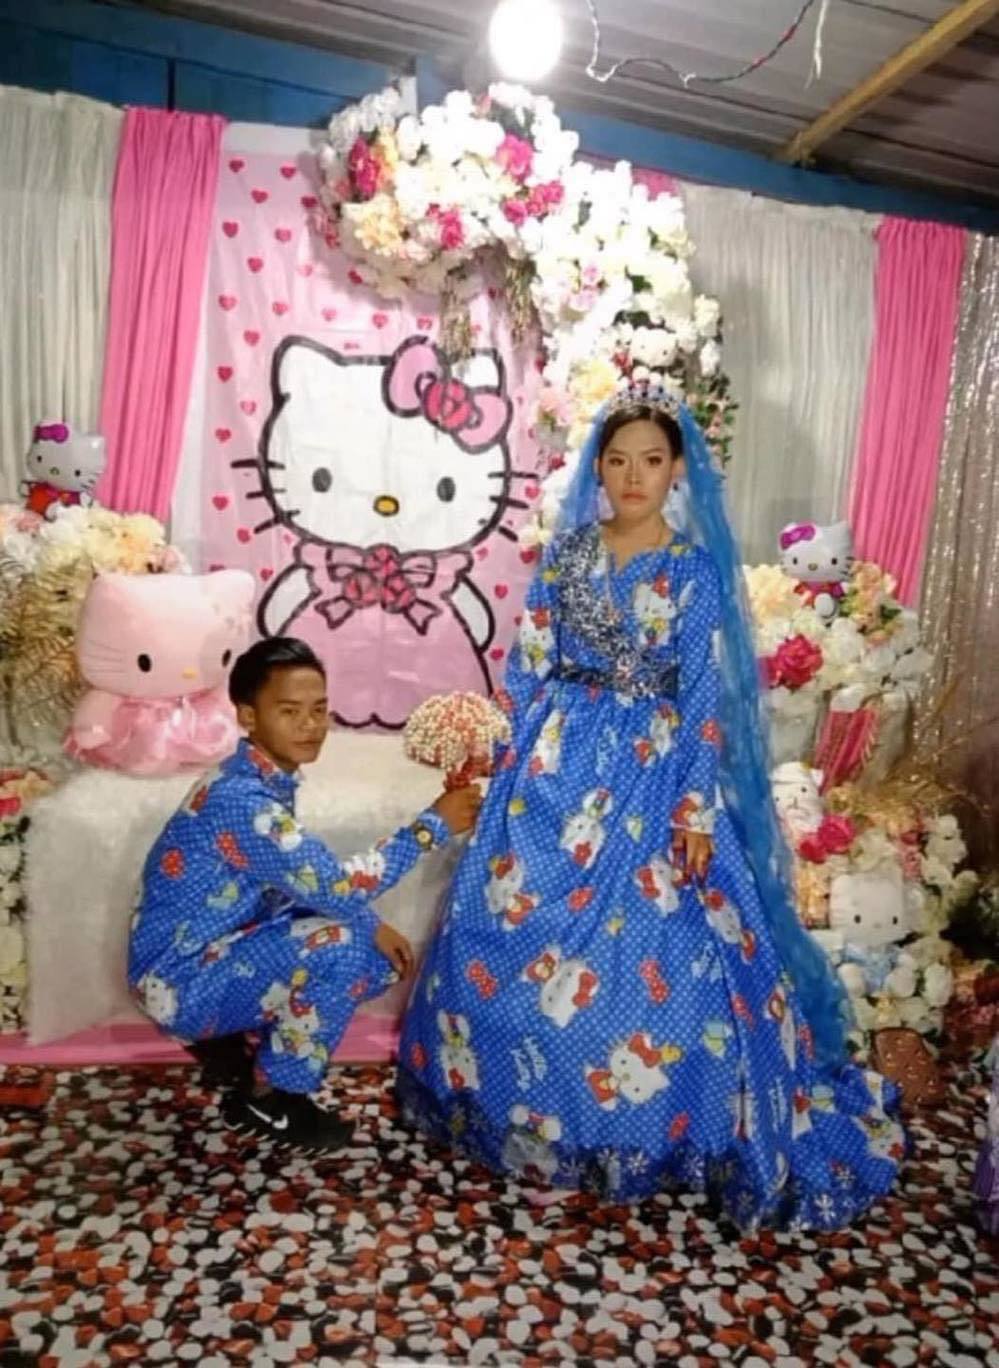  
Cô dâu đã thay nhiều bộ váy cưới độc đáo. (Ảnh: The Straits Times)